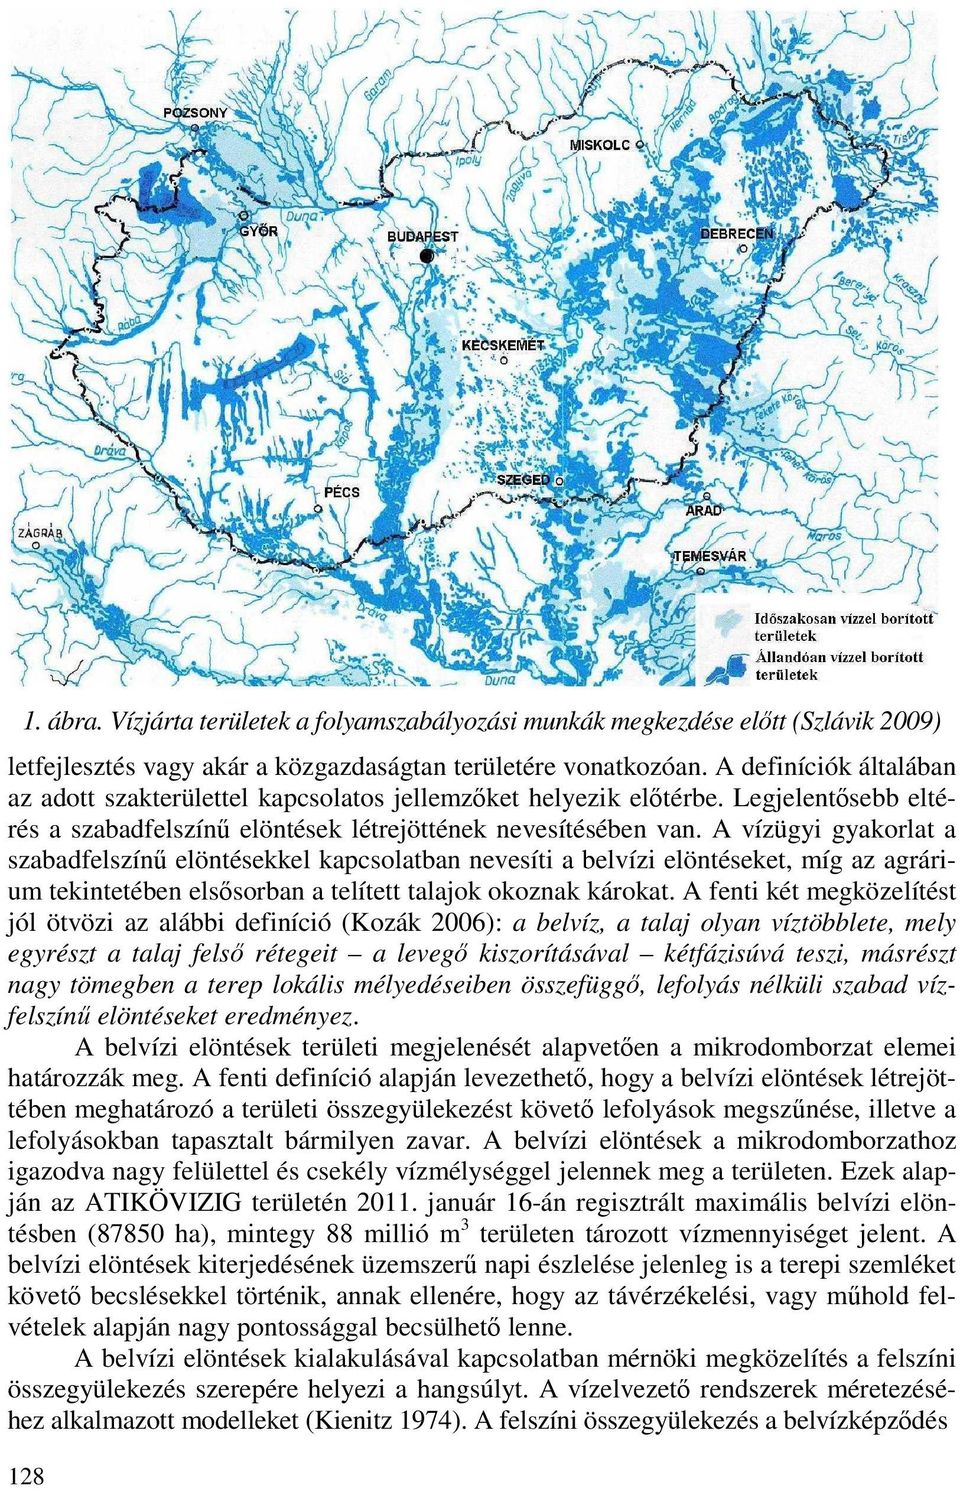 A vízügyi gyakorlat a szabadfelszínő elöntésekkel kapcsolatban nevesíti a belvízi elöntéseket, míg az agrárium tekintetében elsısorban a telített talajok okoznak károkat.